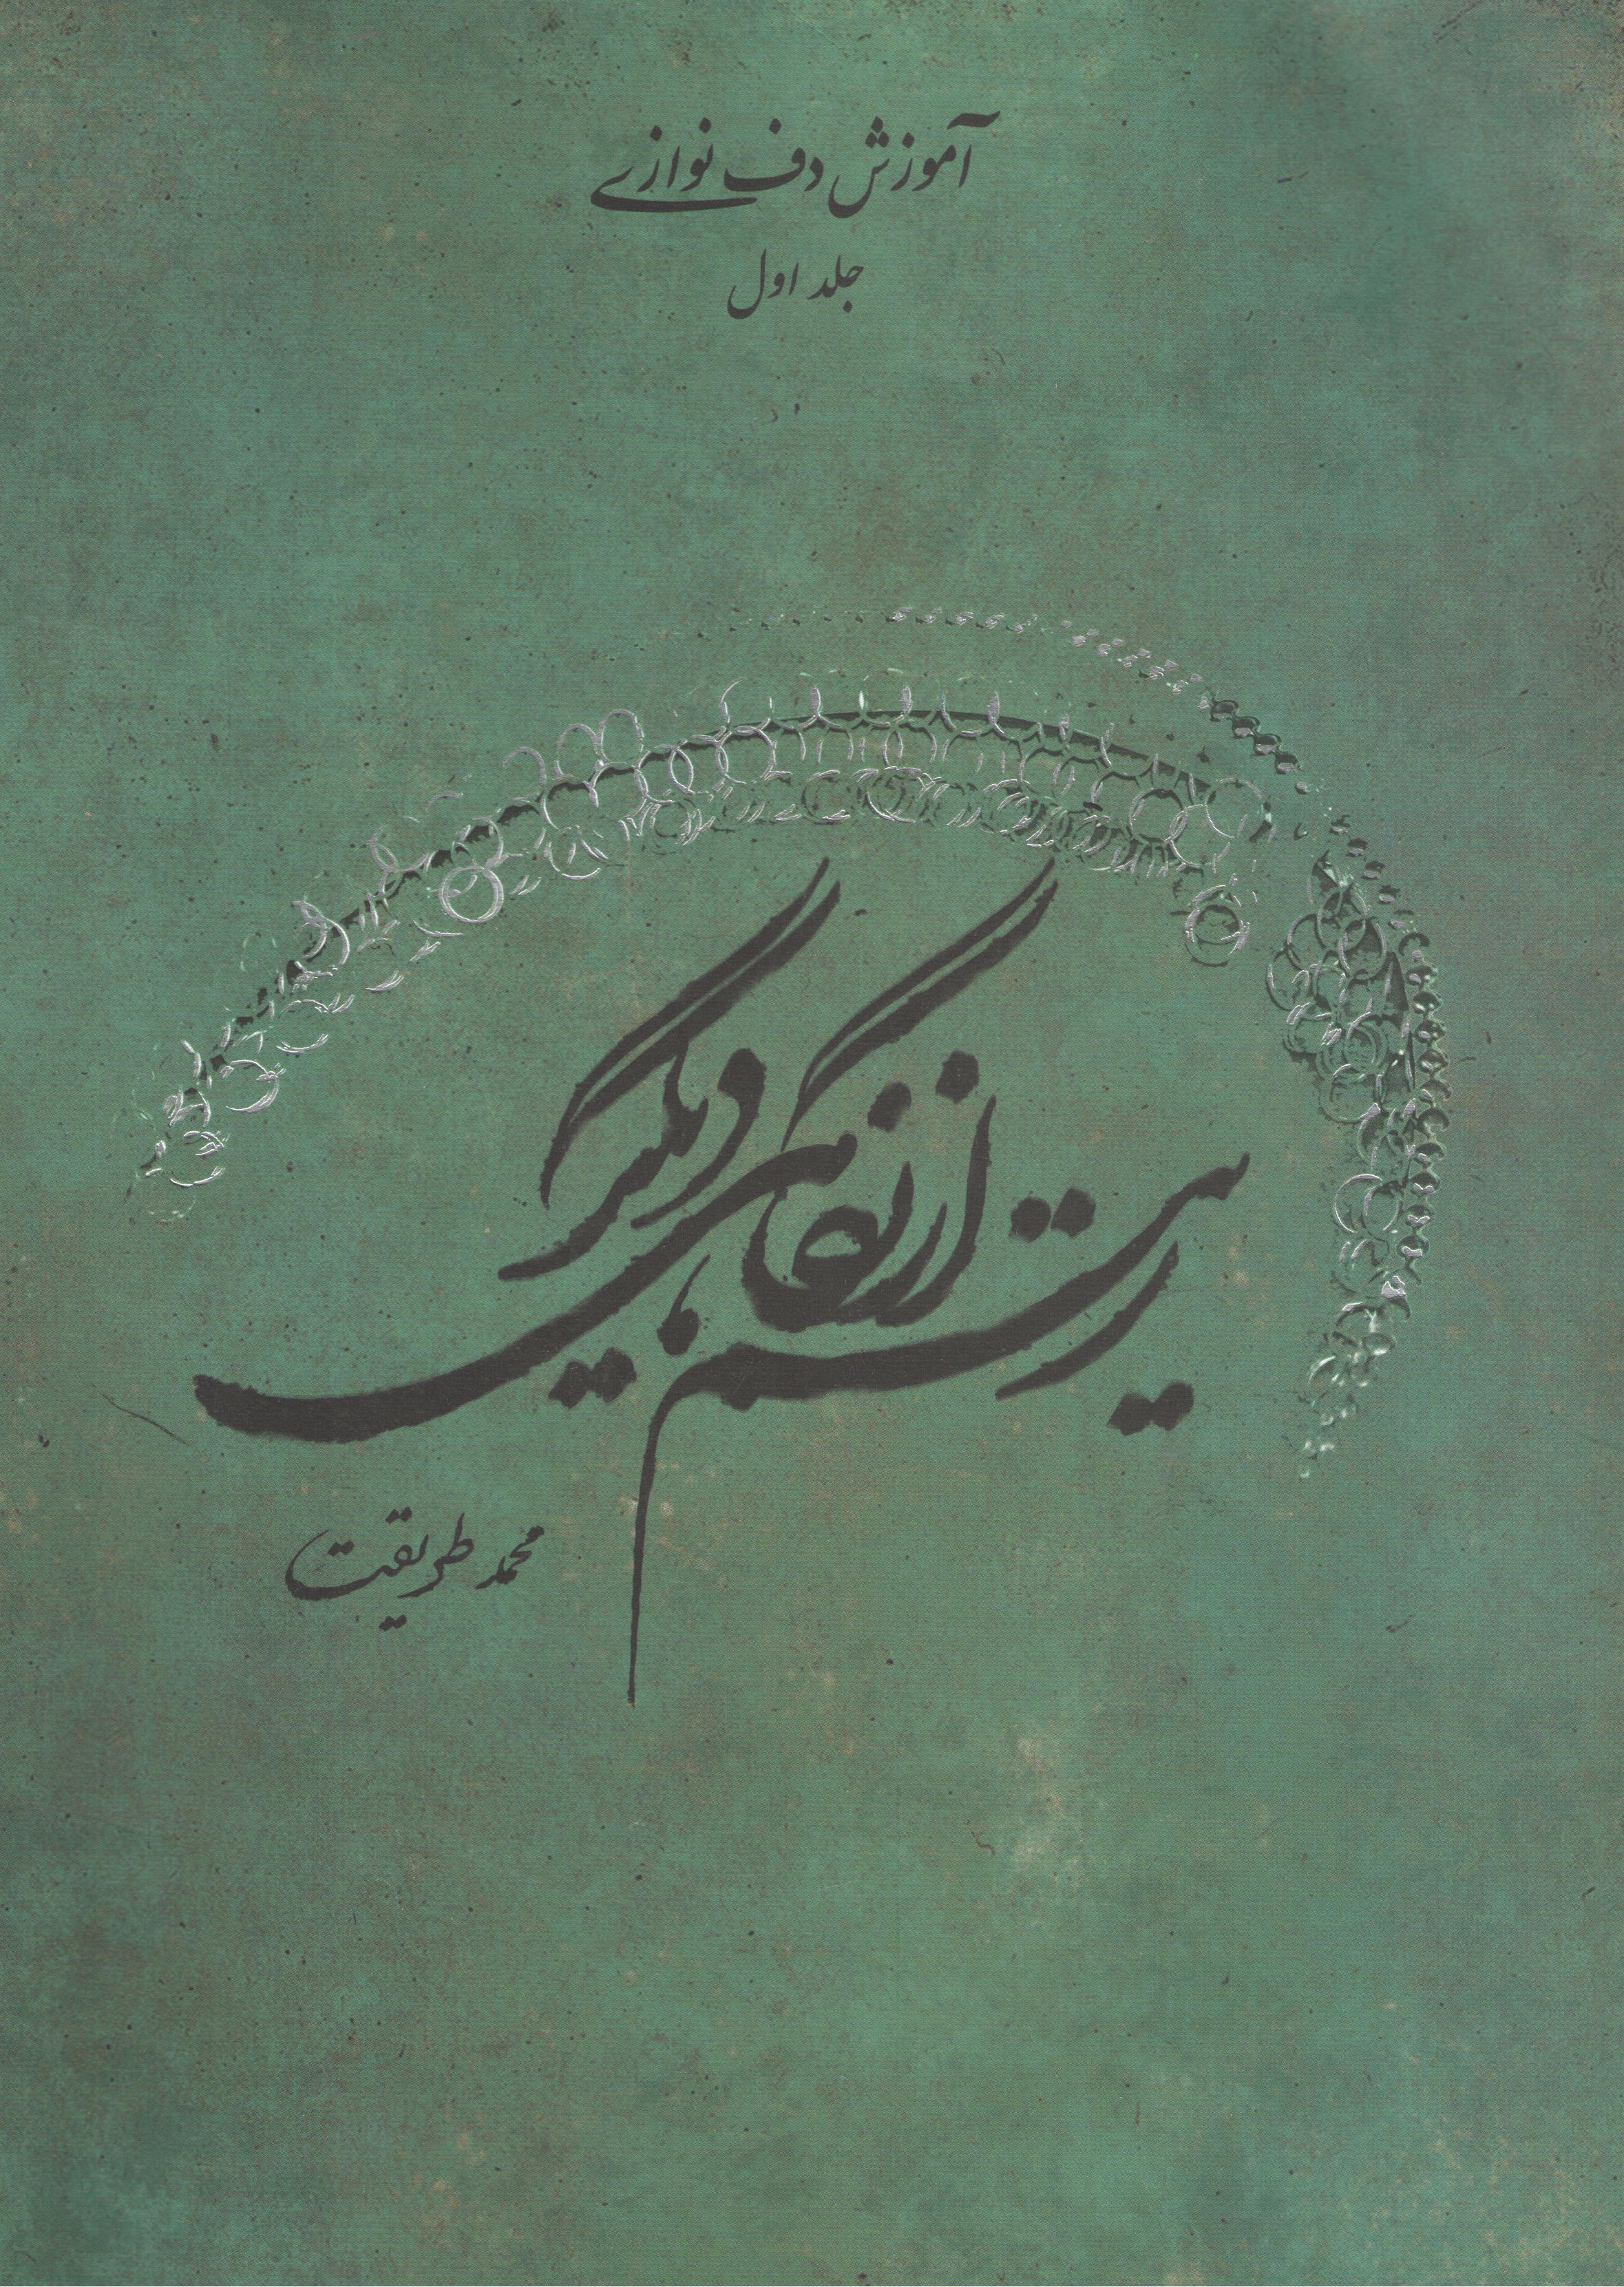 ریتم از نگاهی دیگر / محمد طریقت